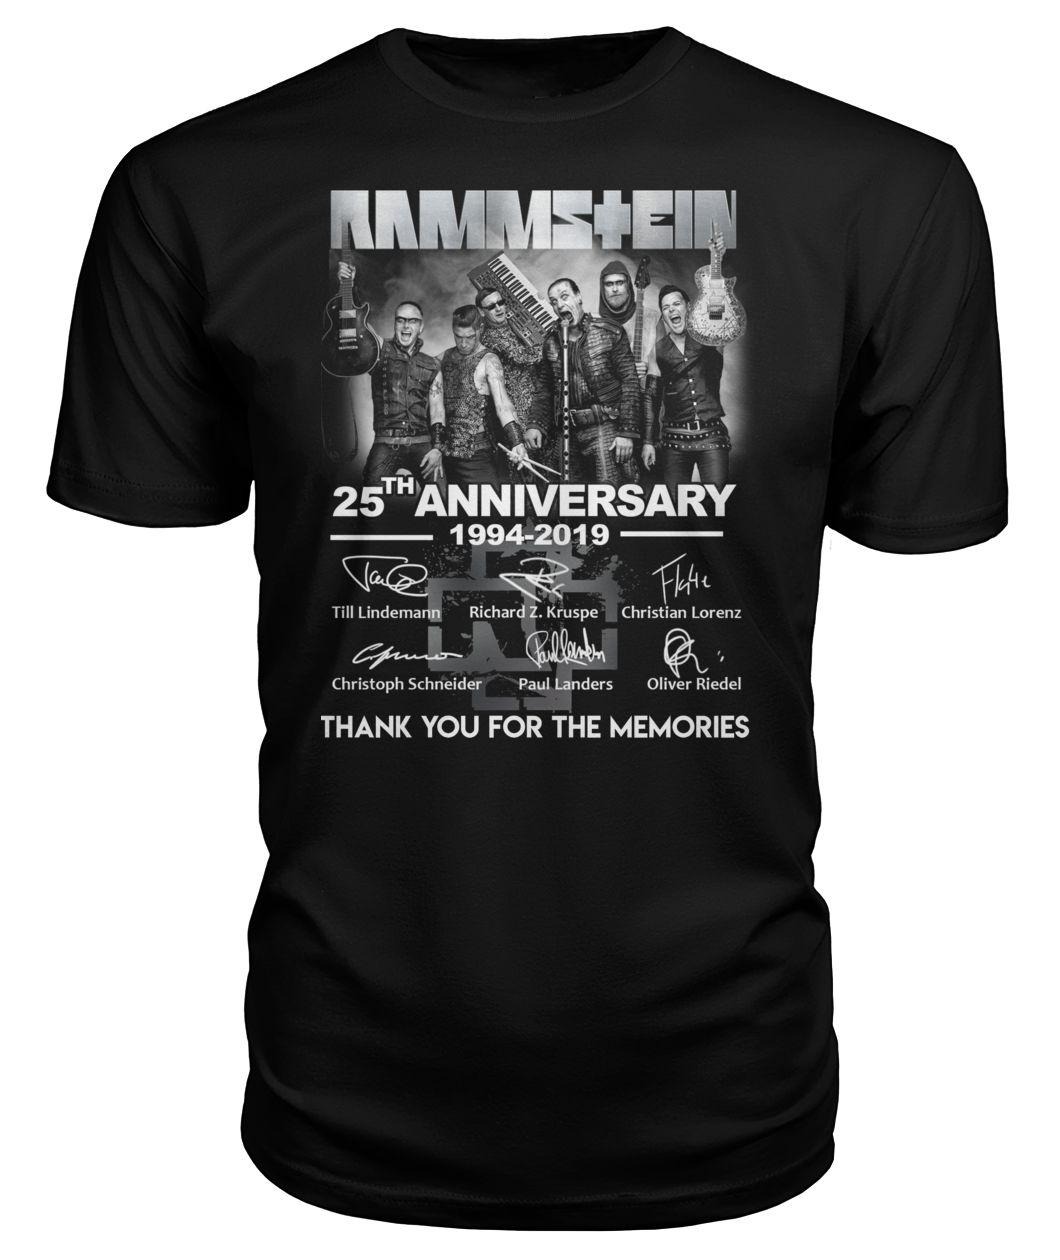 Rammstein 25th anniversary 1994 2019 premium shirt